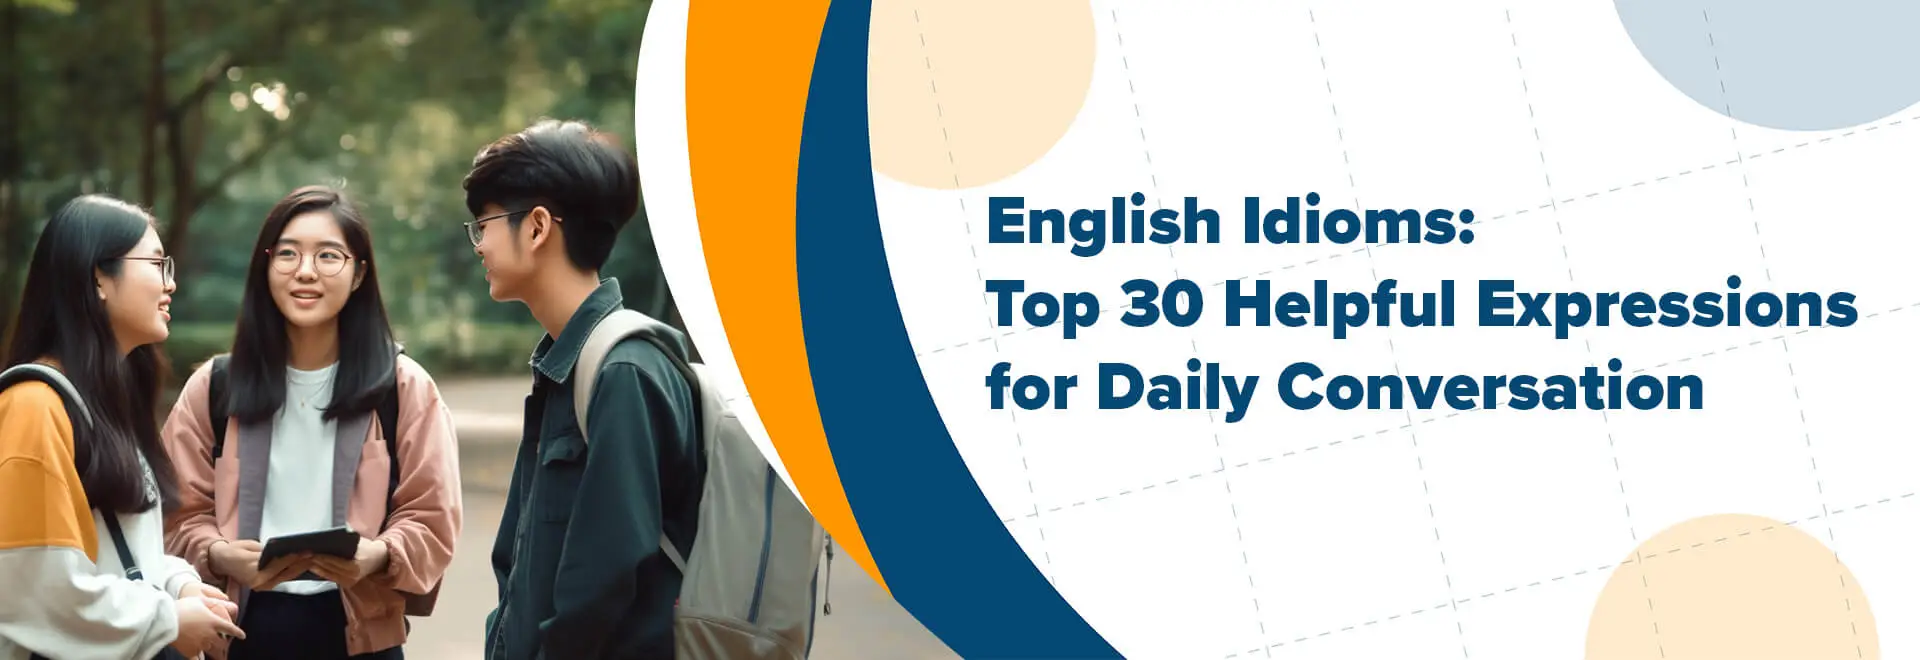 التعابير الإنجليزية: أفضل 30 تعبيرًا مفيدًا للمحادثة اليومية